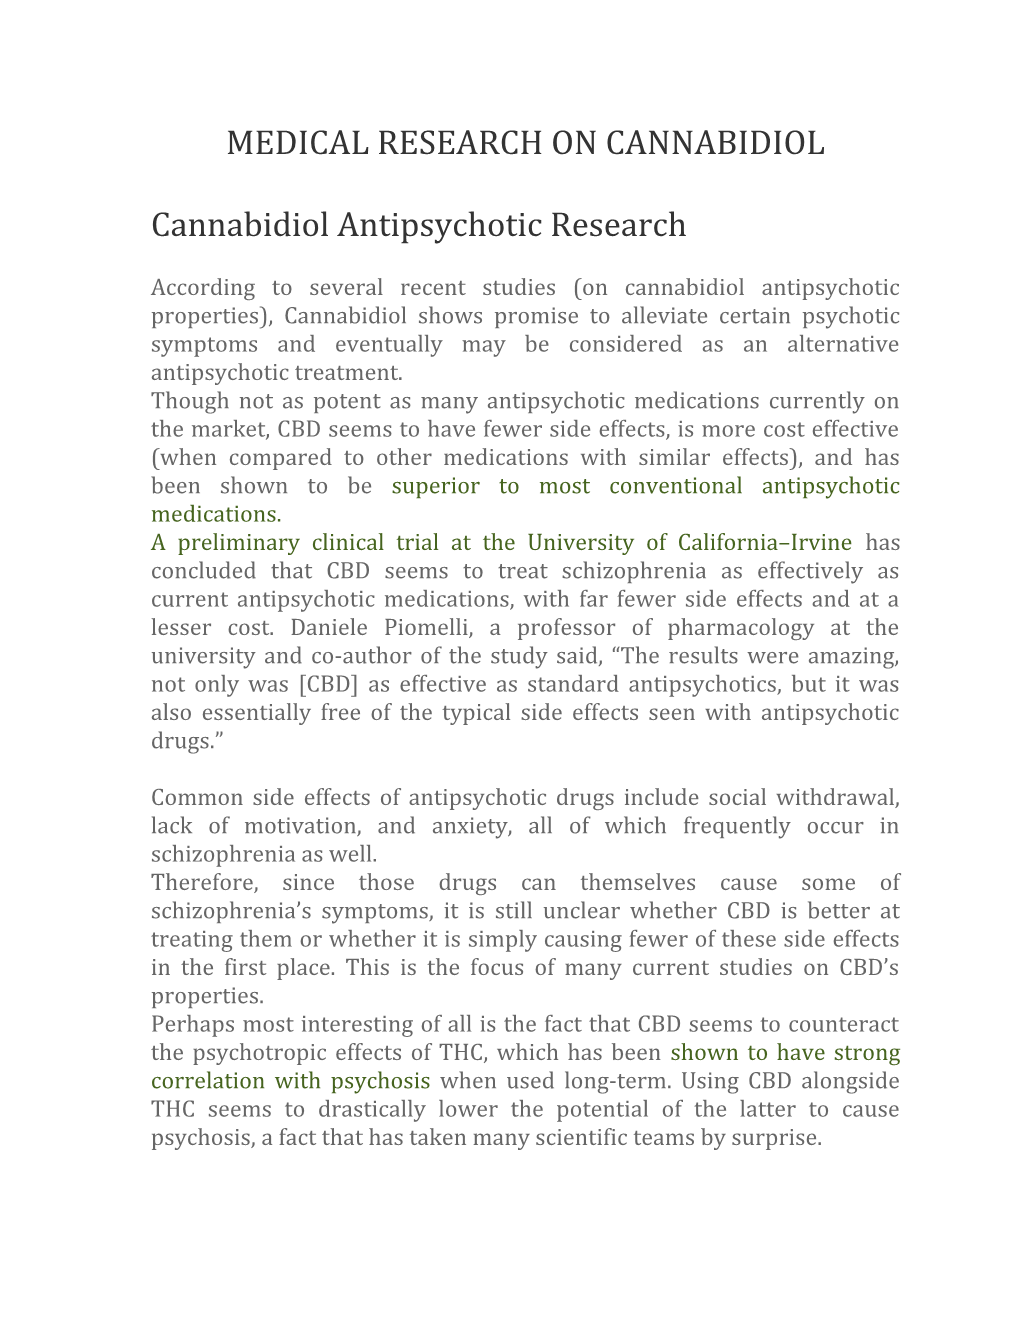 Medical Research on Cannabidiol